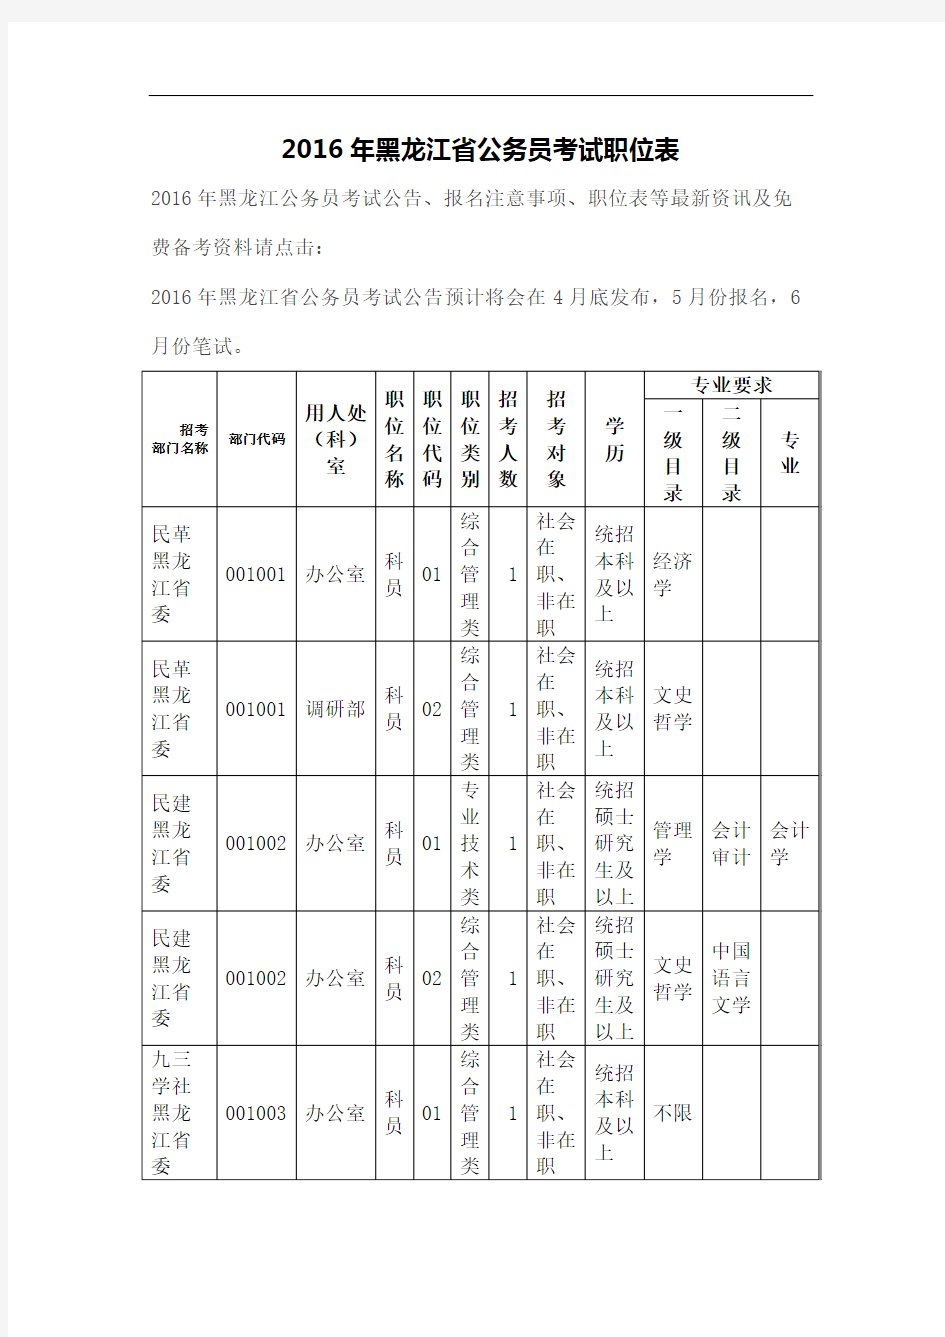 黑龙江省公务员考试职位表